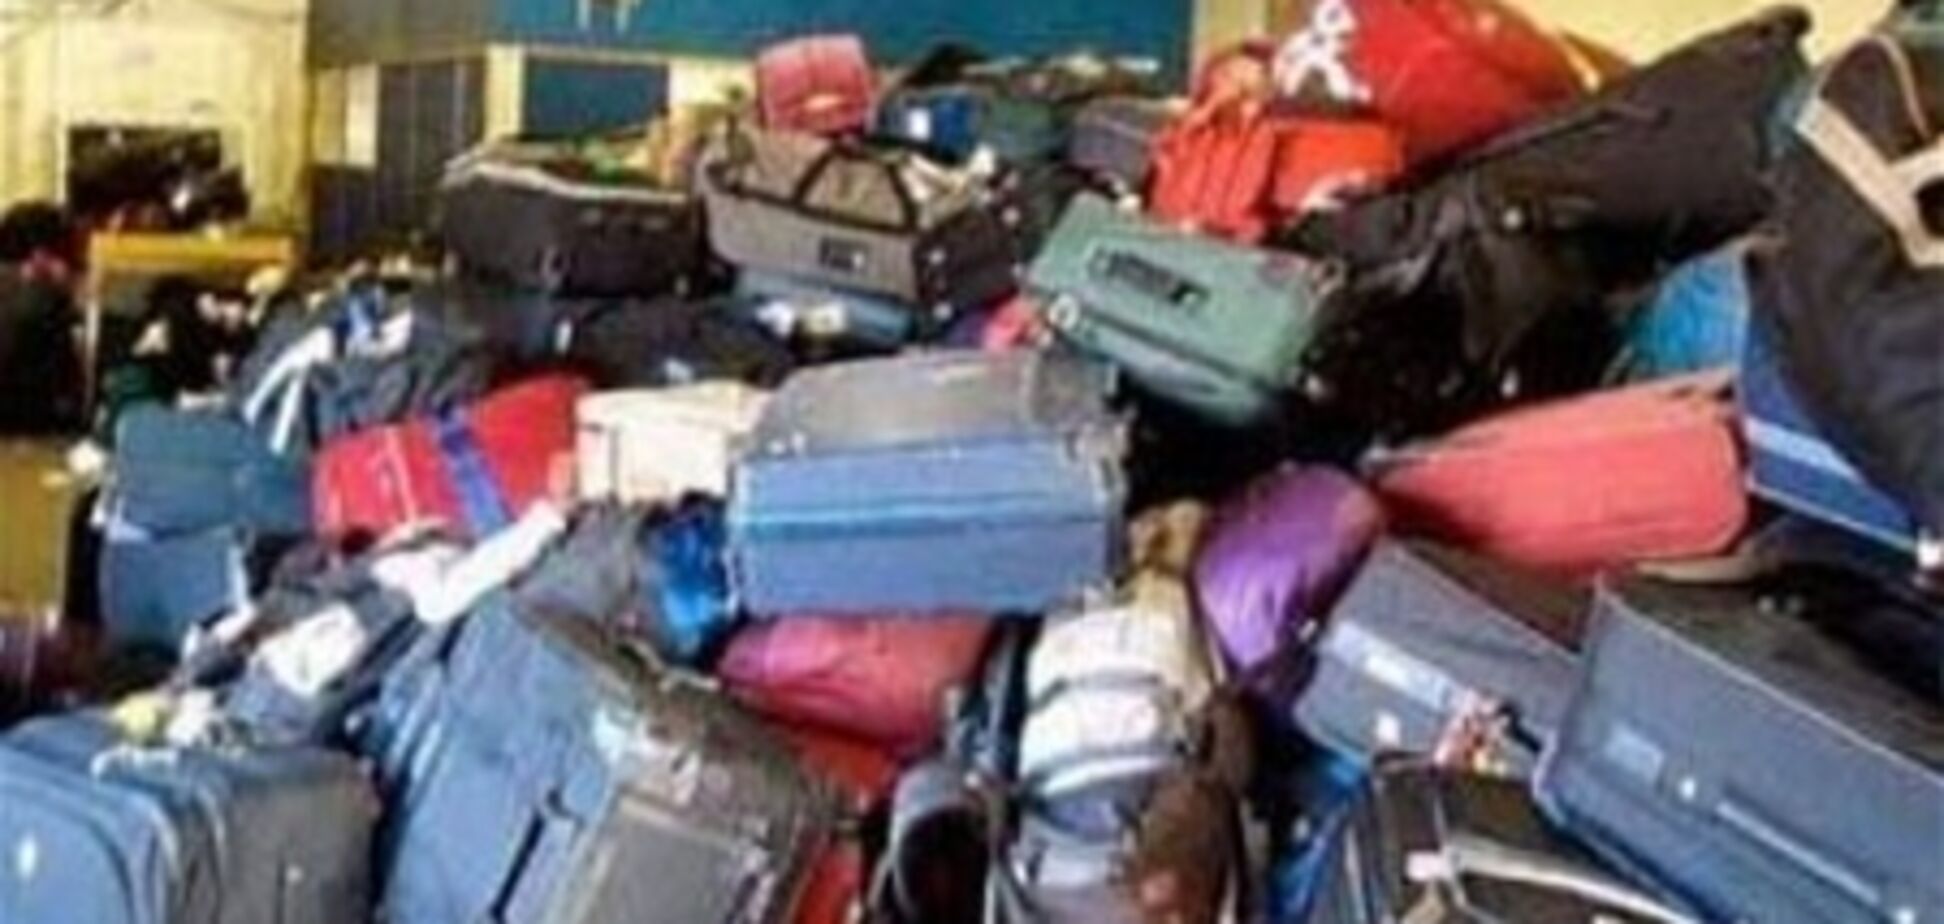 Авиакомпании потеряли 26 миллионов чемоданов